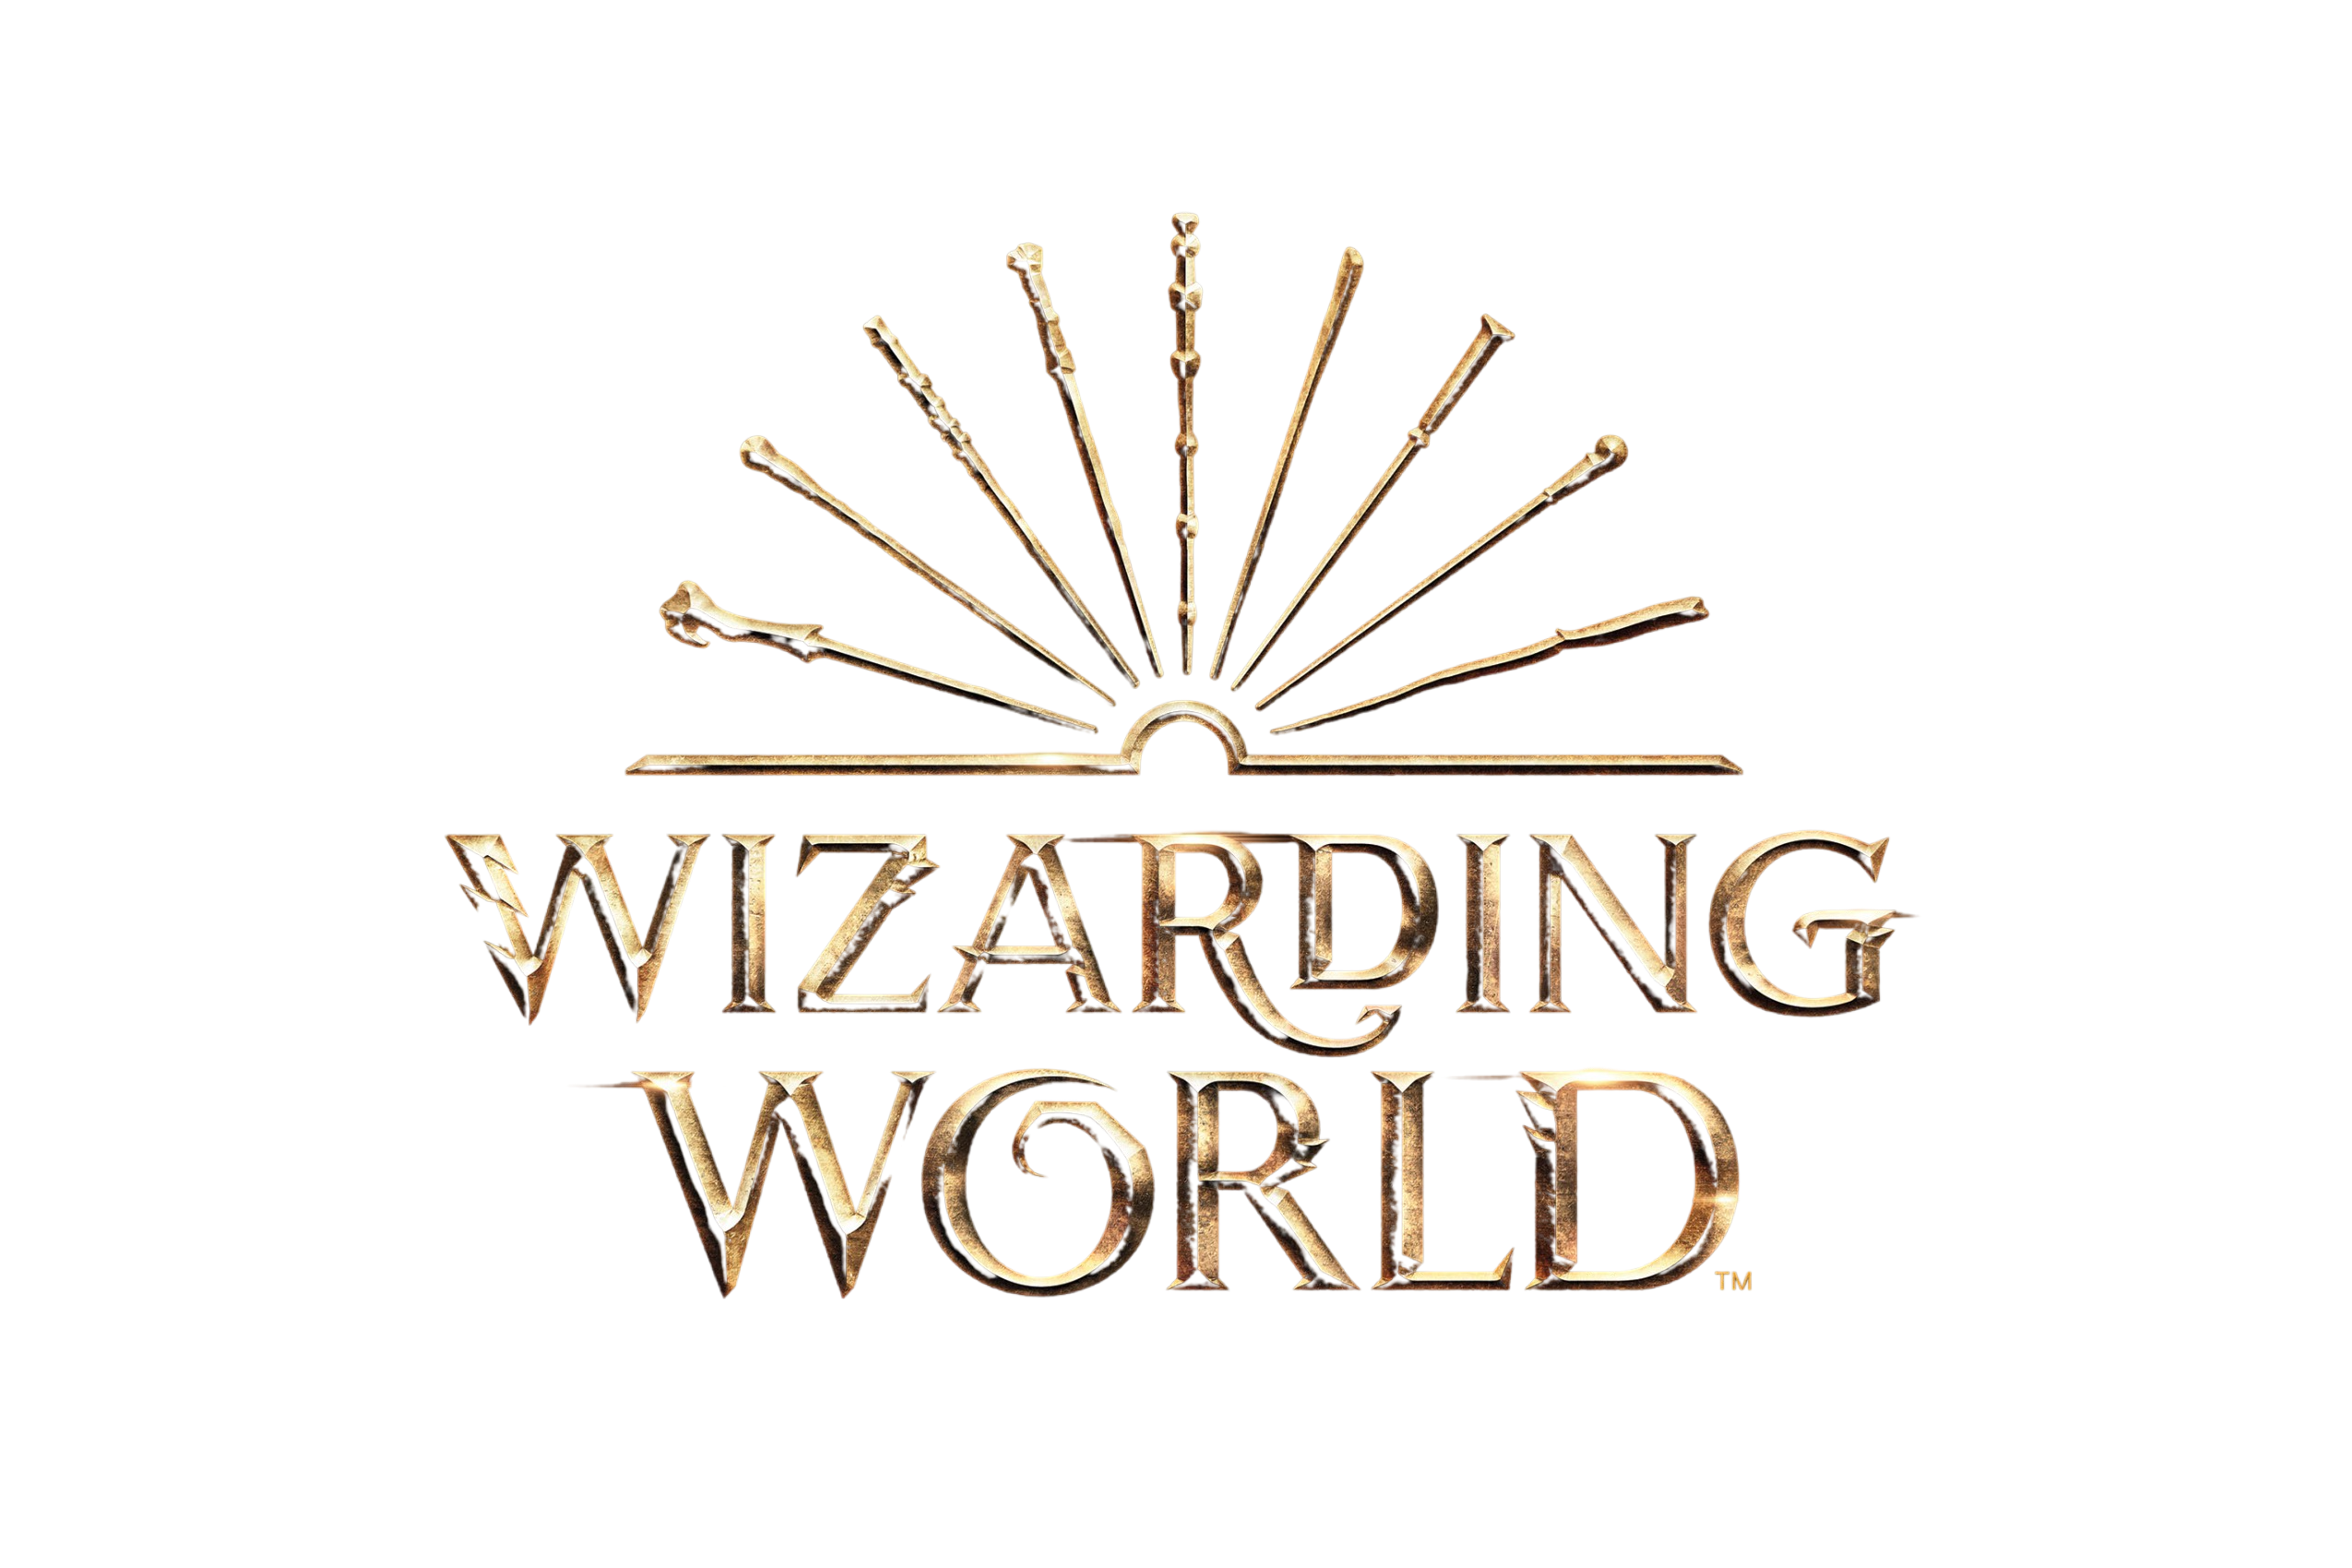 wizarding-world-website-harry-potter-wiki-fandom